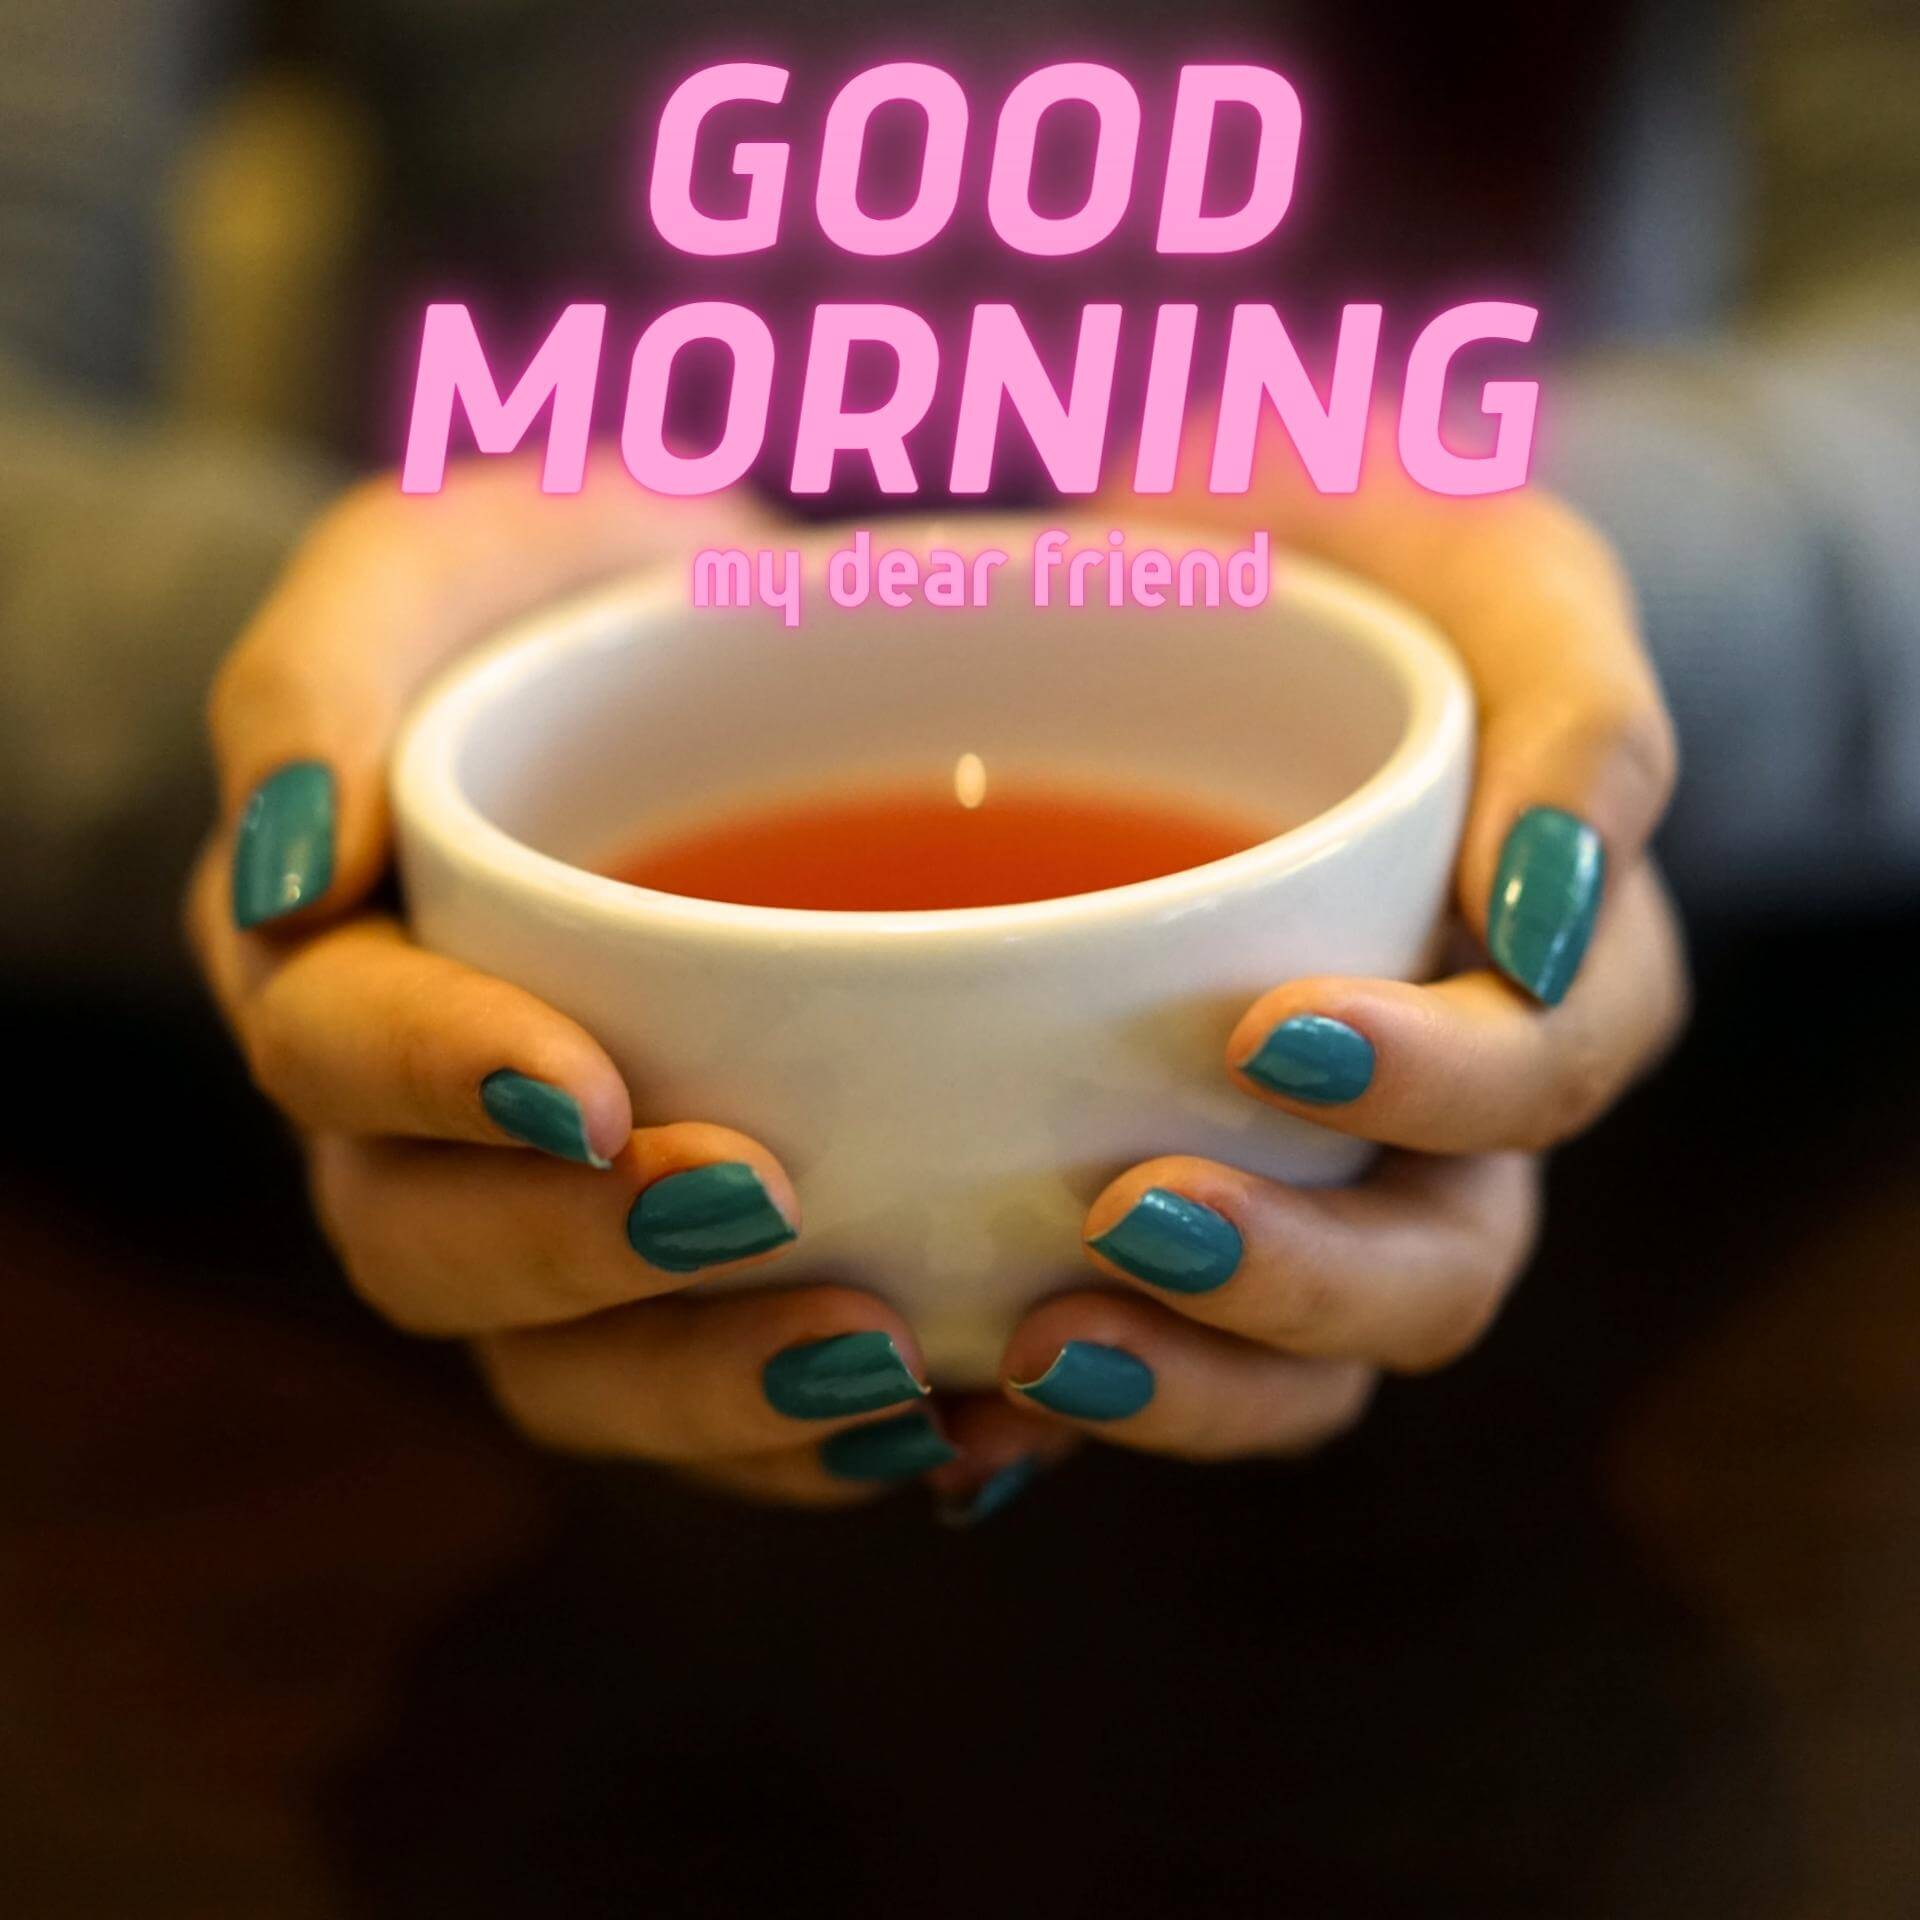 Tea Coffe Good Morning Wallpaper Pics for Facebook